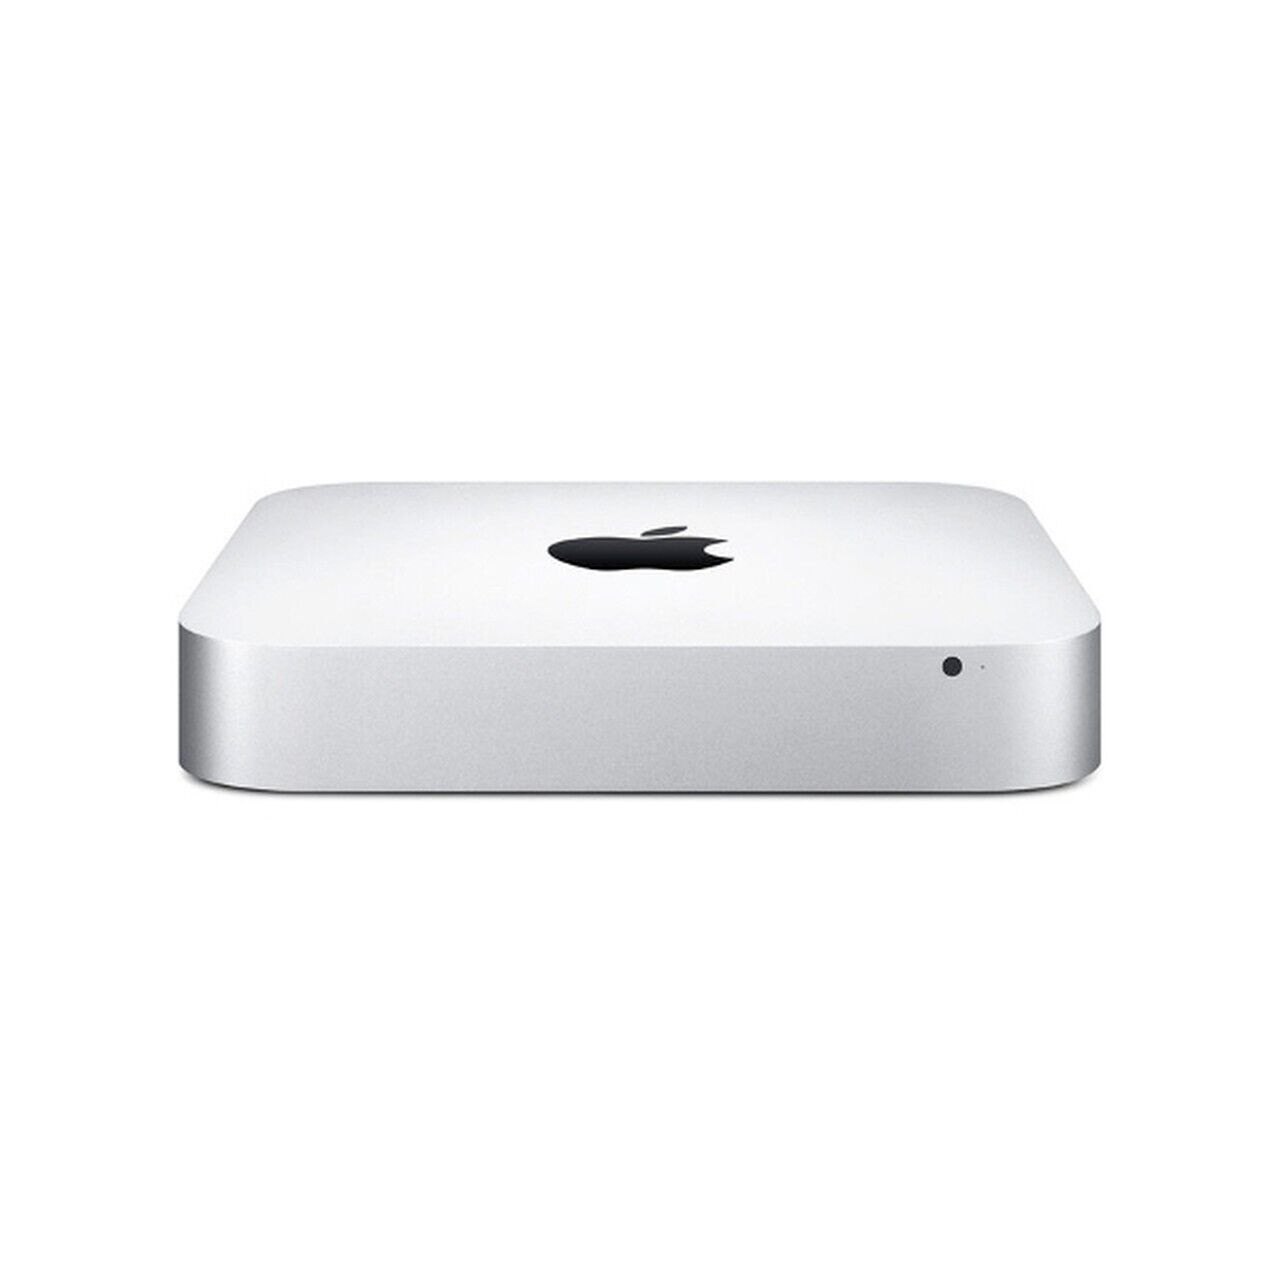 Apple MAC Mini A1347 Late 2014 MGEM2LL/A I5 1.4GHz 4GB 500GB  HDD High Sierra